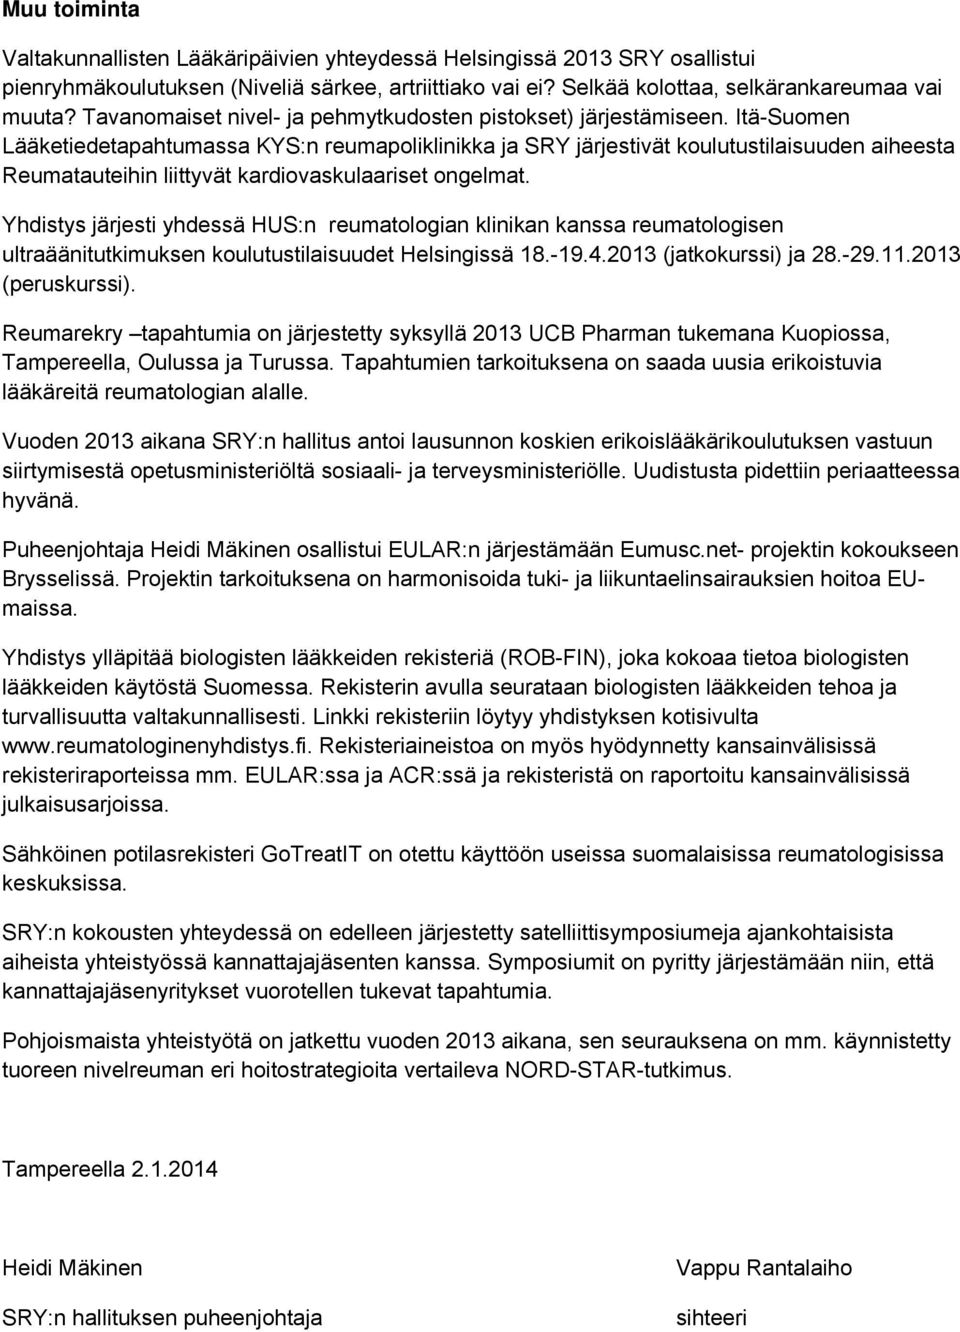 Itä-Suomen Lääketiedetapahtumassa KYS:n reumapoliklinikka ja SRY järjestivät koulutustilaisuuden aiheesta Reumatauteihin liittyvät kardiovaskulaariset ongelmat.